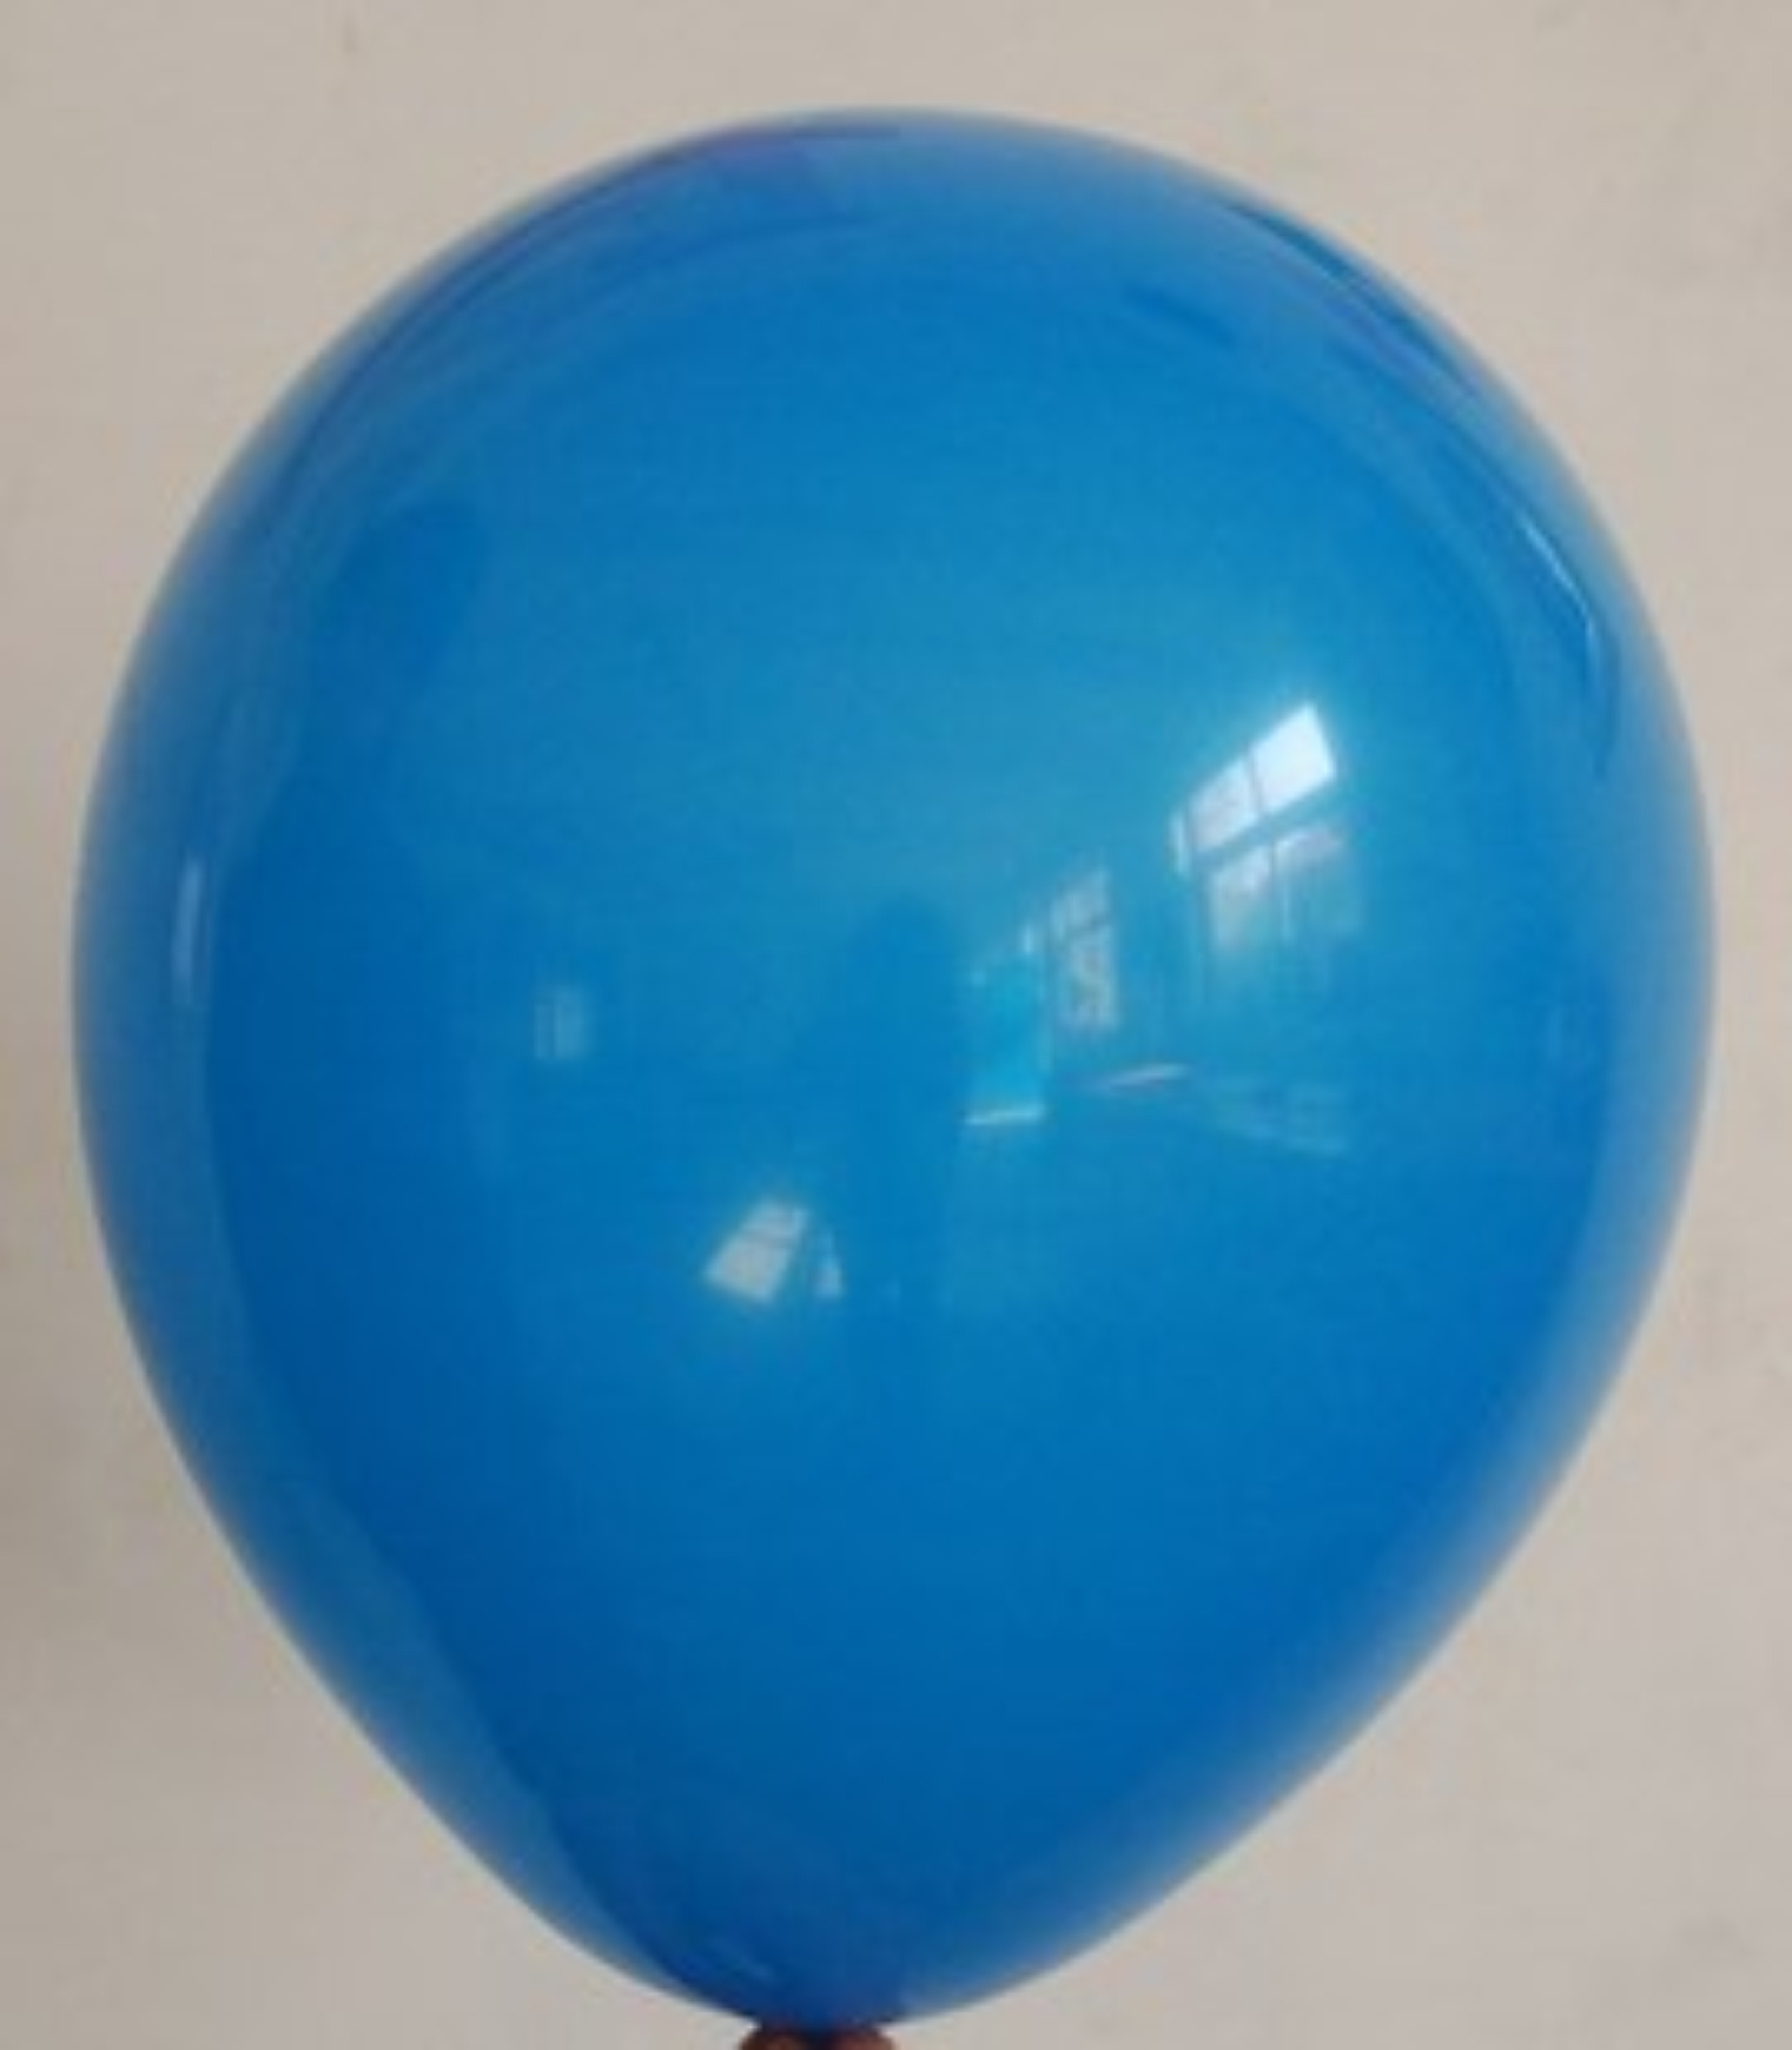 气球飞的高摄影图片-气球飞的高摄影作品-千库网